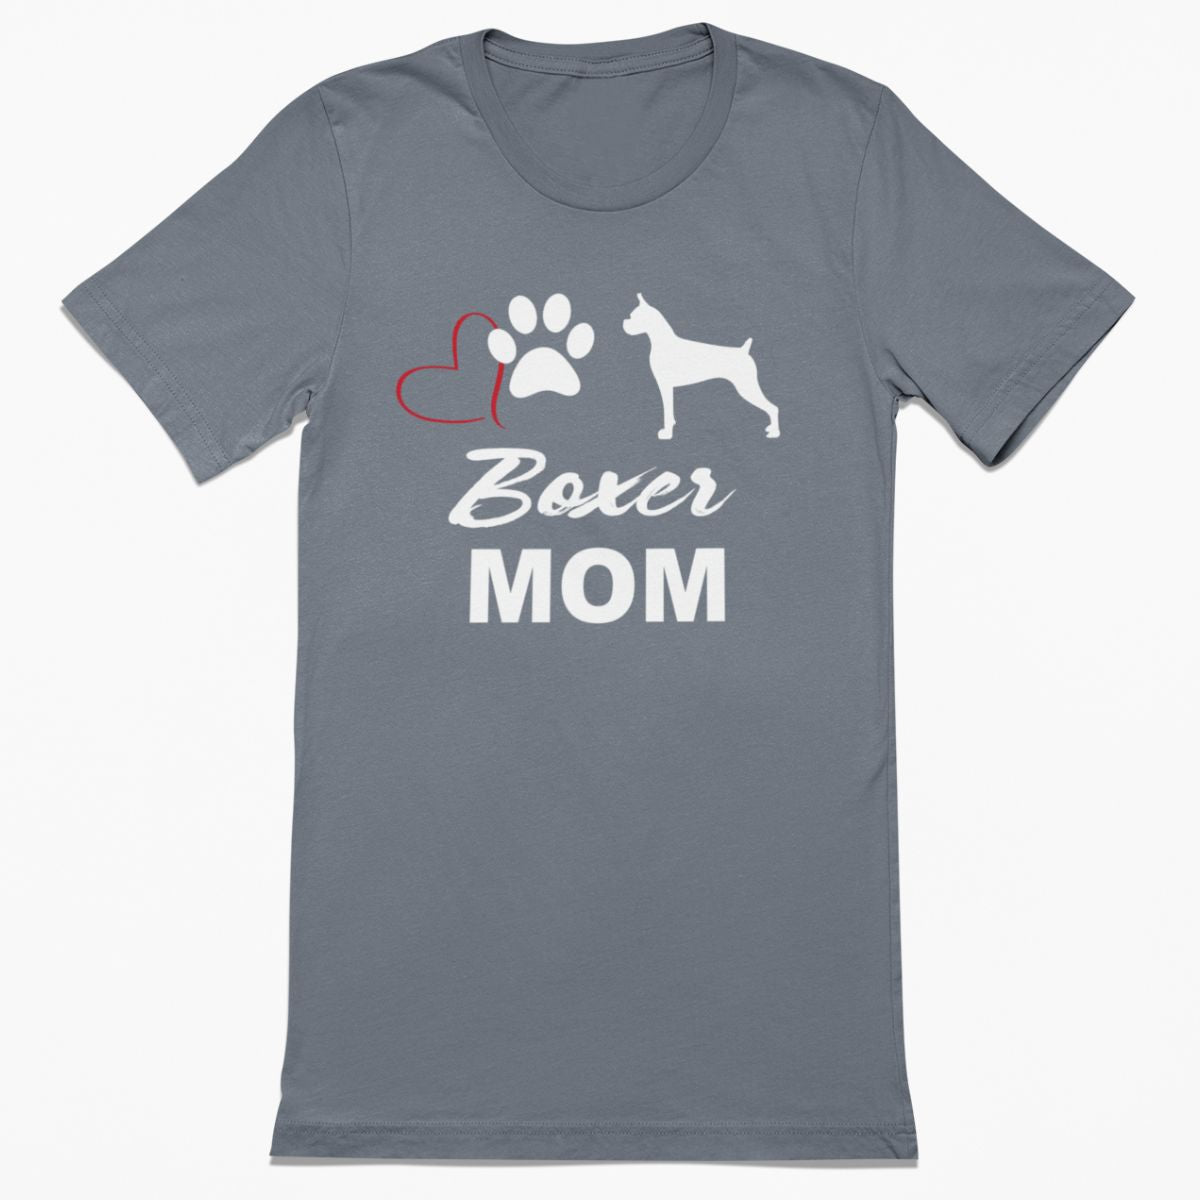 Boxer Mom Shirt